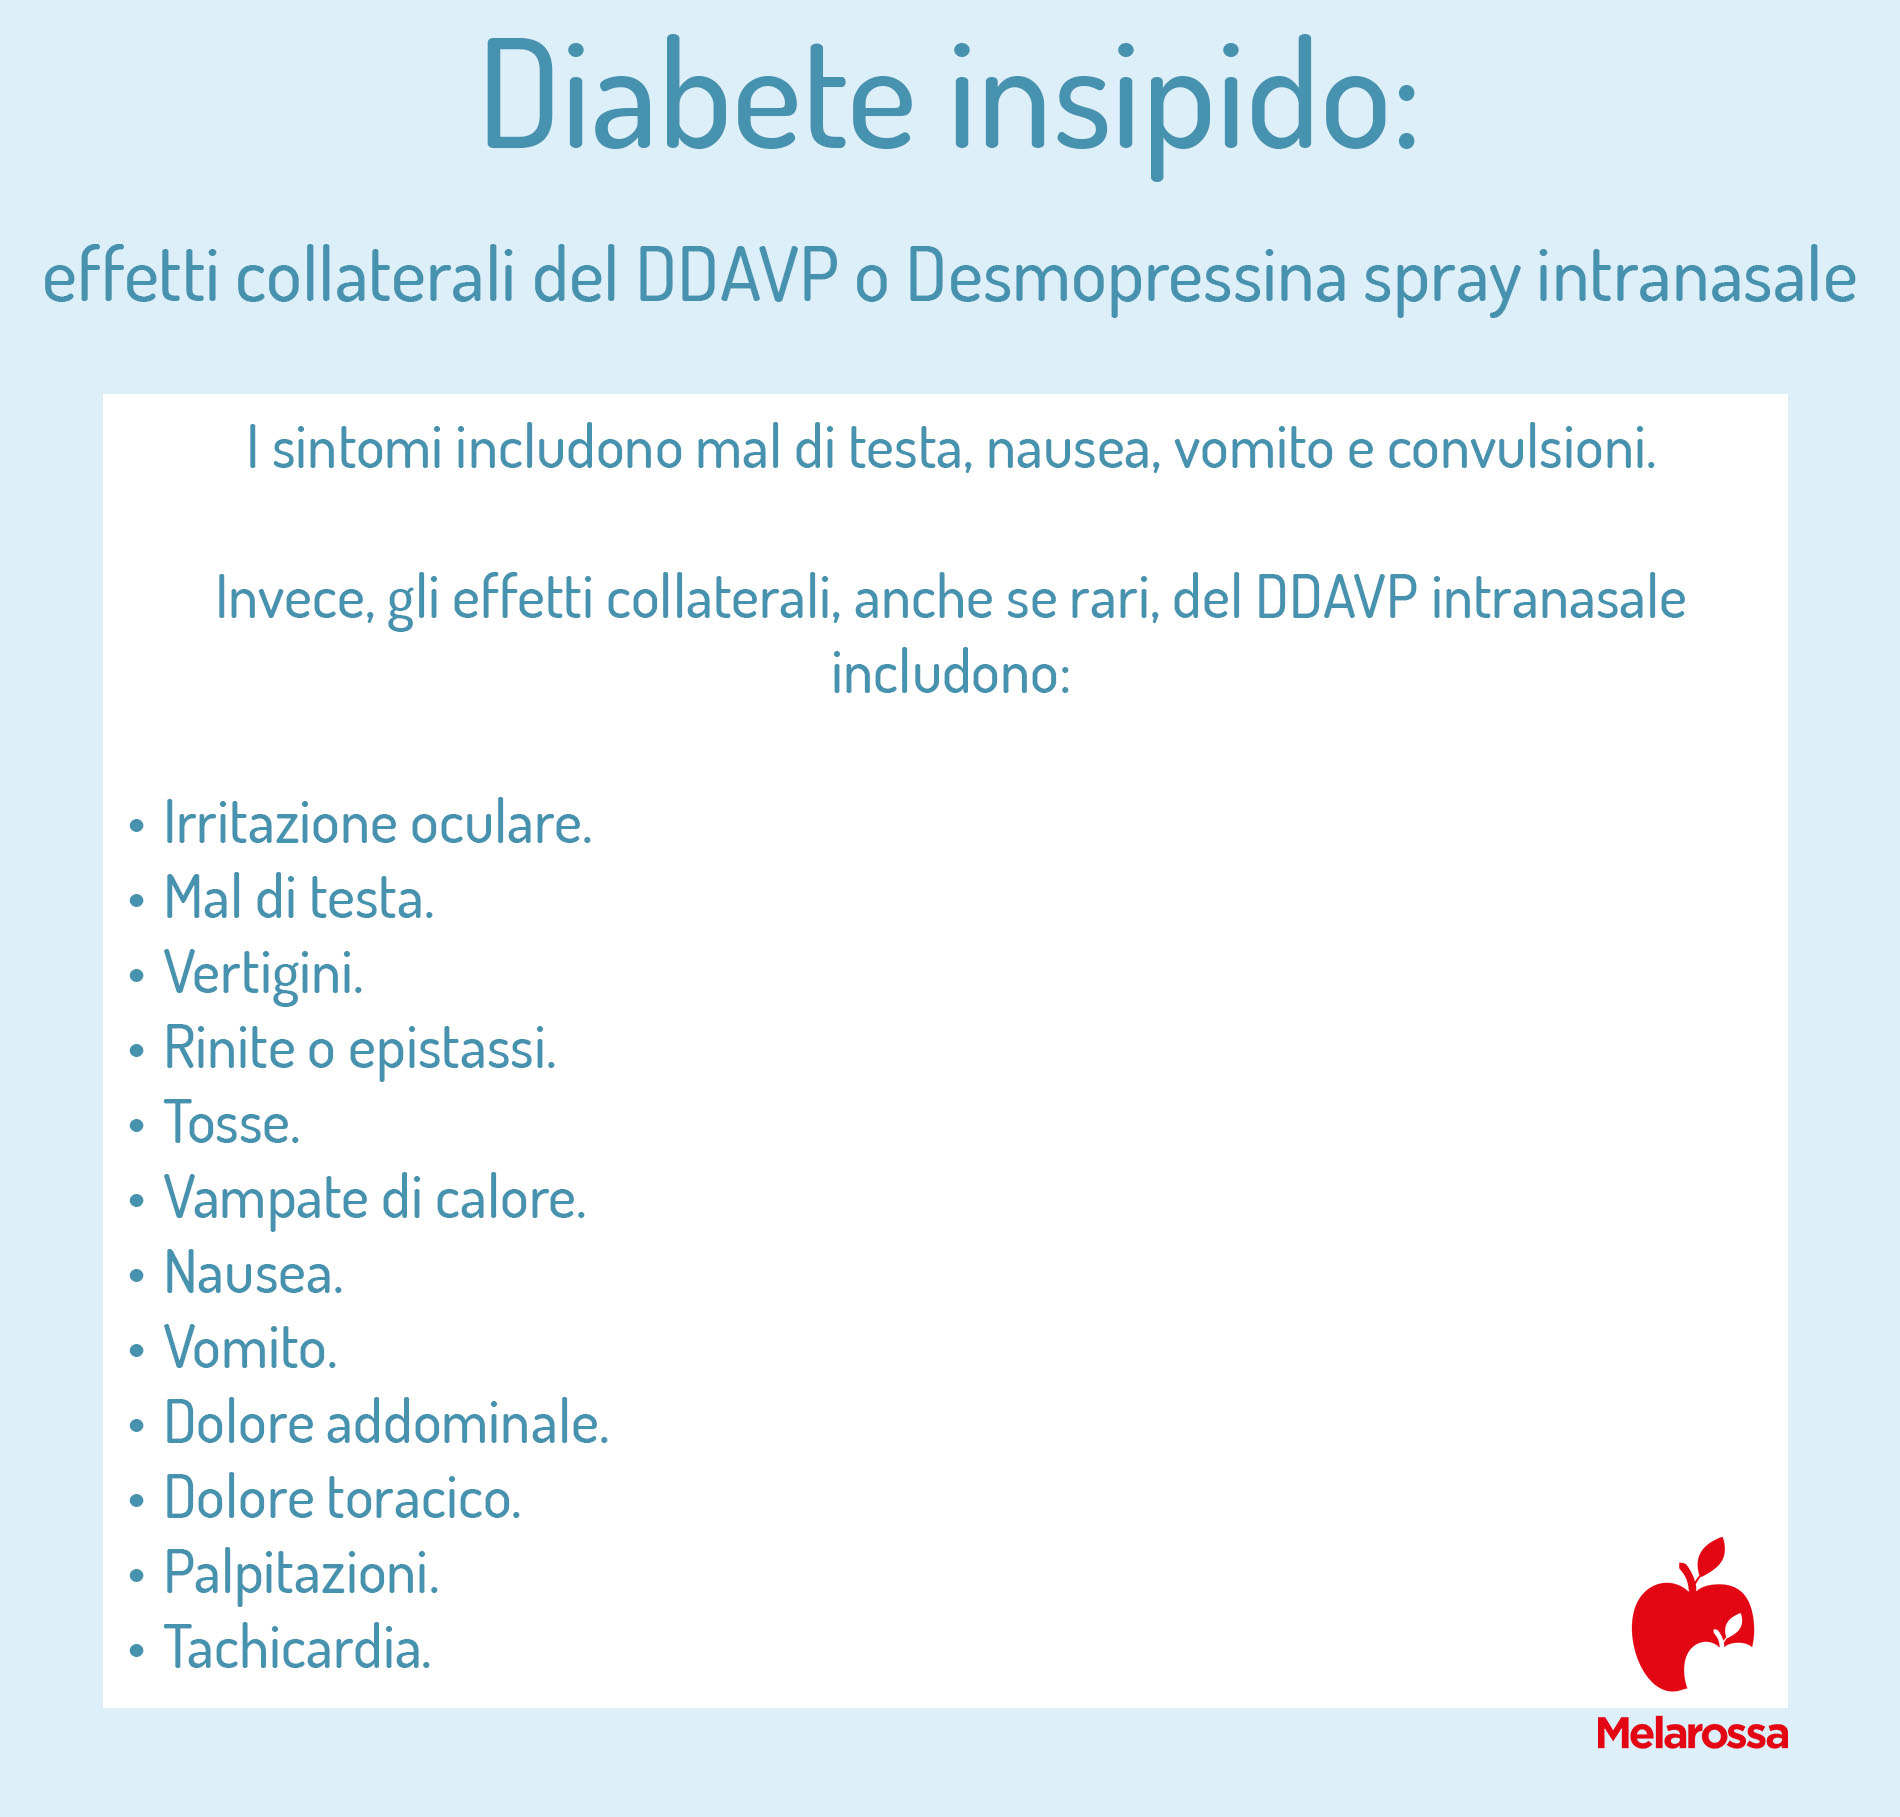 diabete insipido: effetti collaterali dello spray nasale DDAVP